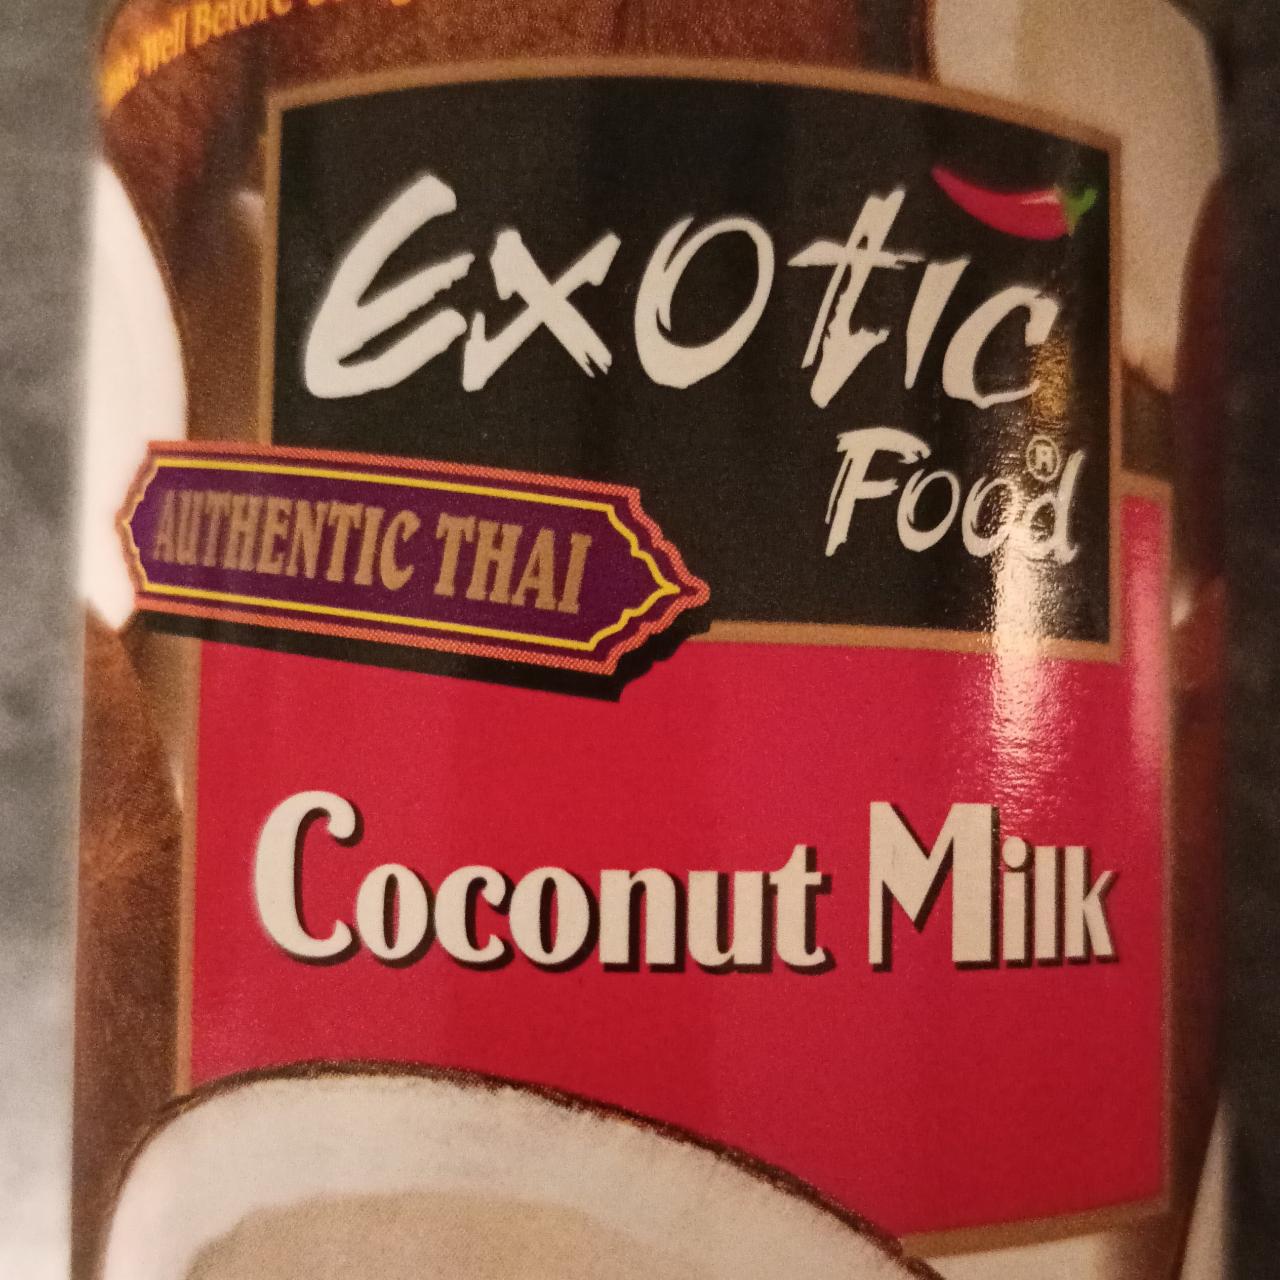 Fotografie - Authentic Thai Coconut Milk Exotic Food